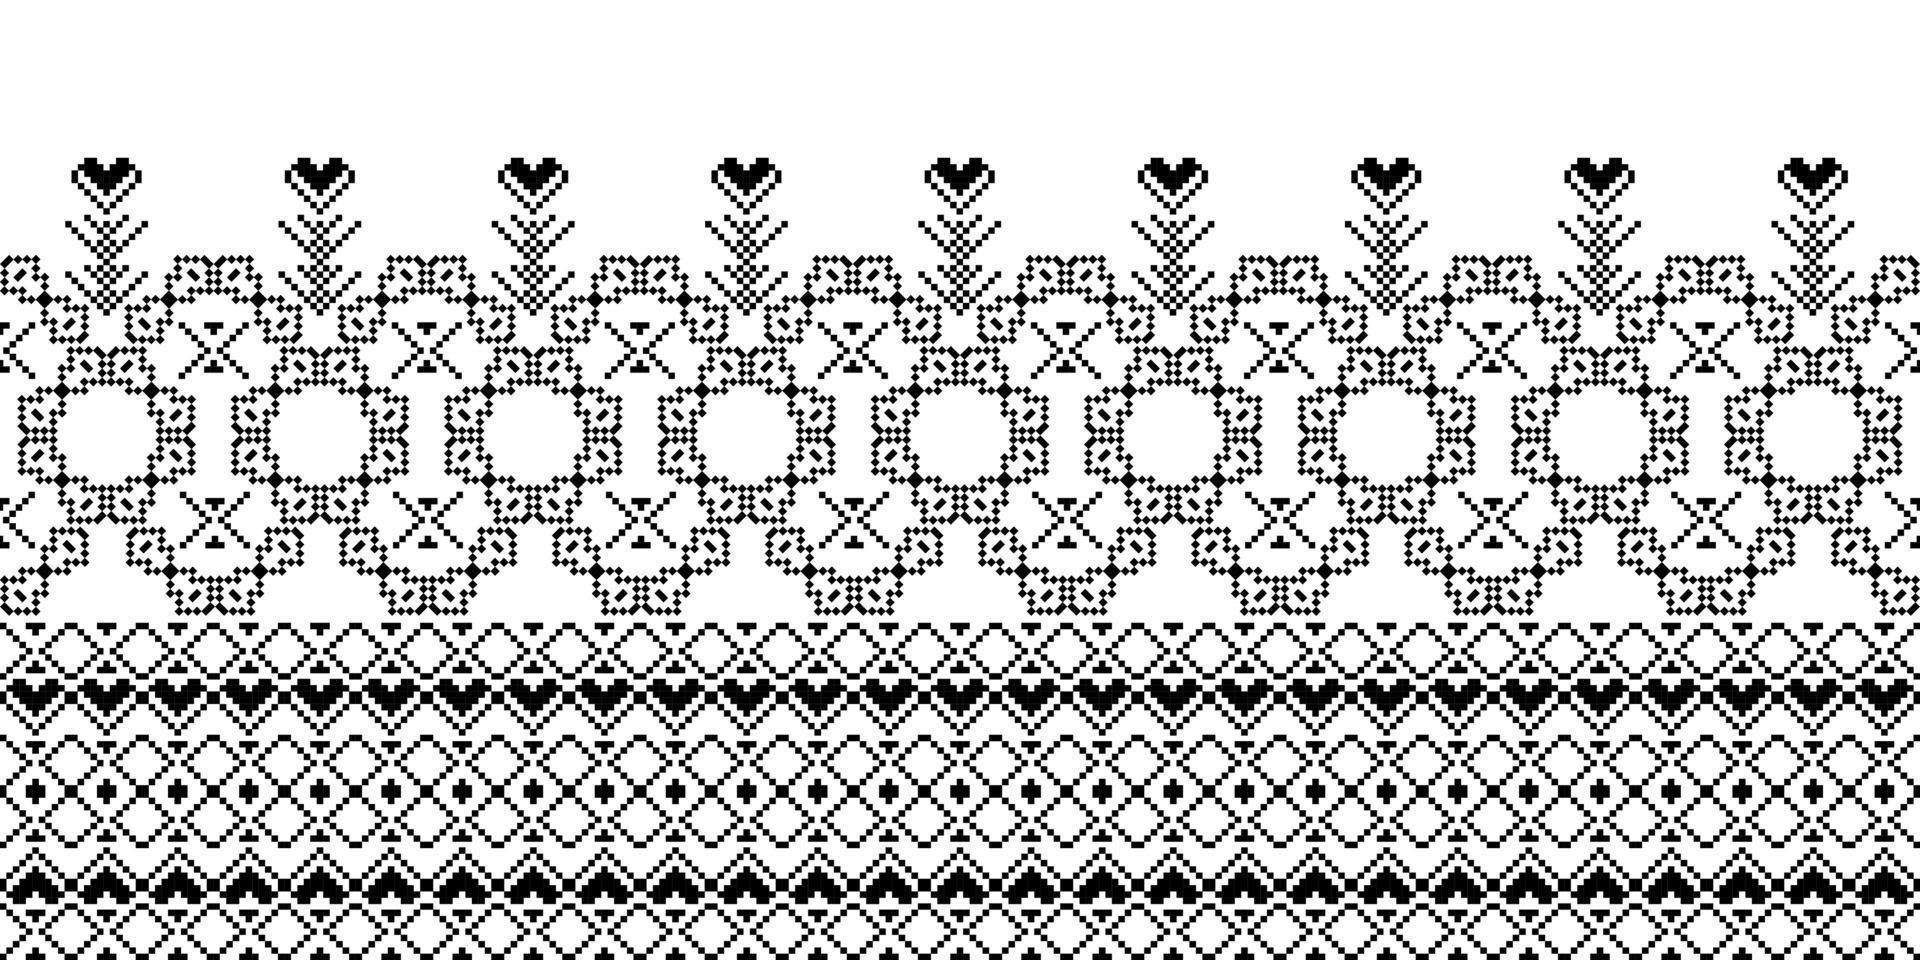 naadloos geïnspireerd borduurpatroon, vector horizontale naad stof ornamentals ontwerp voor mode kleding, stof, textiel, decoratie achtergrond.